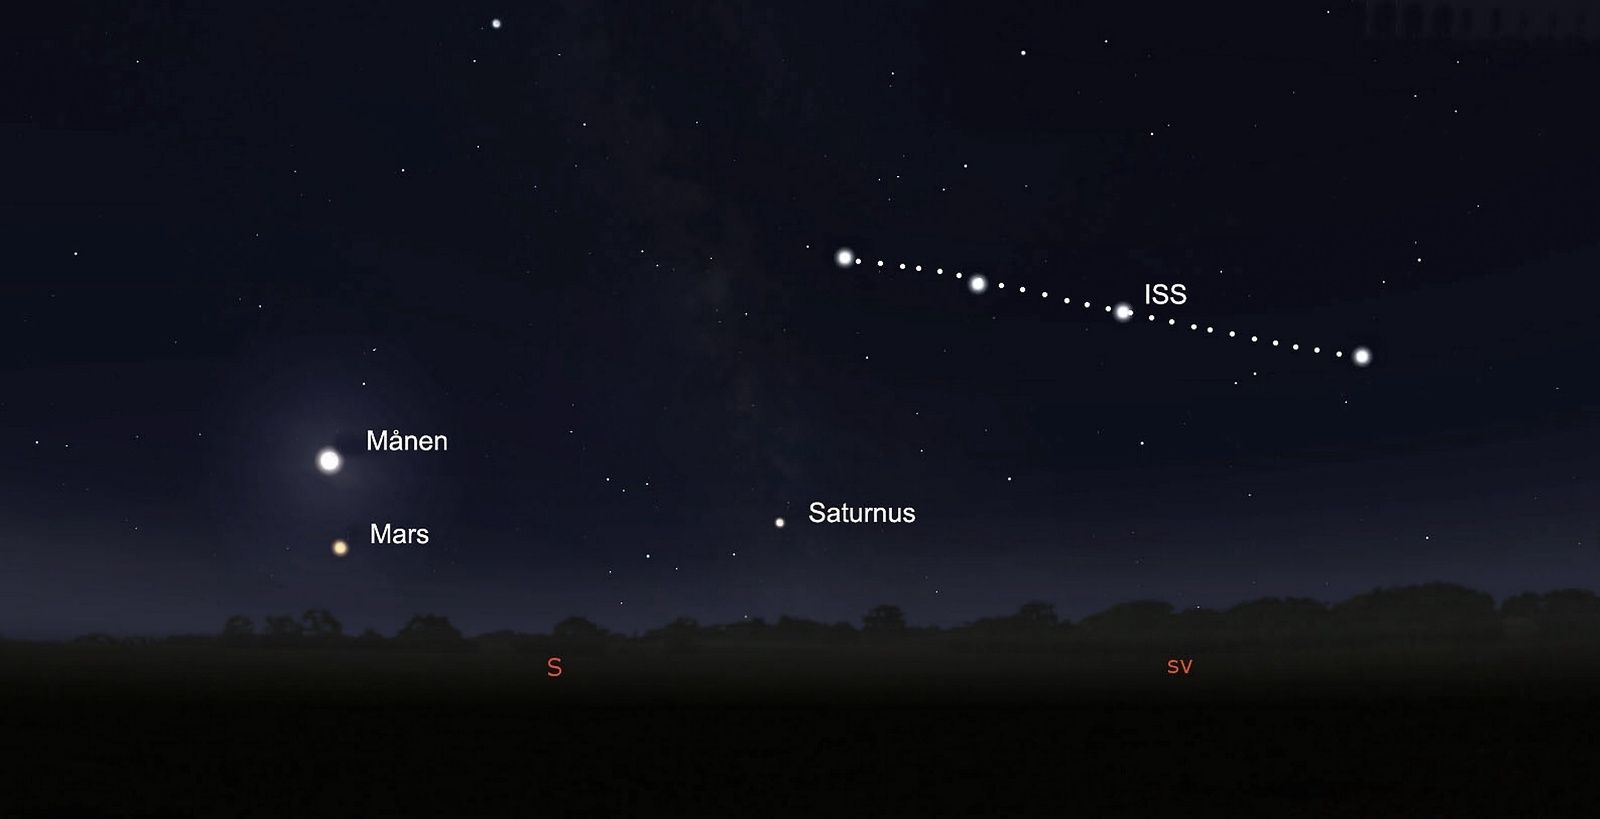 Precis efter midnatt dyker den internationella rymdstationen (ISS) upp på himlen. Månen är då fortfarande delvis förmörkad.